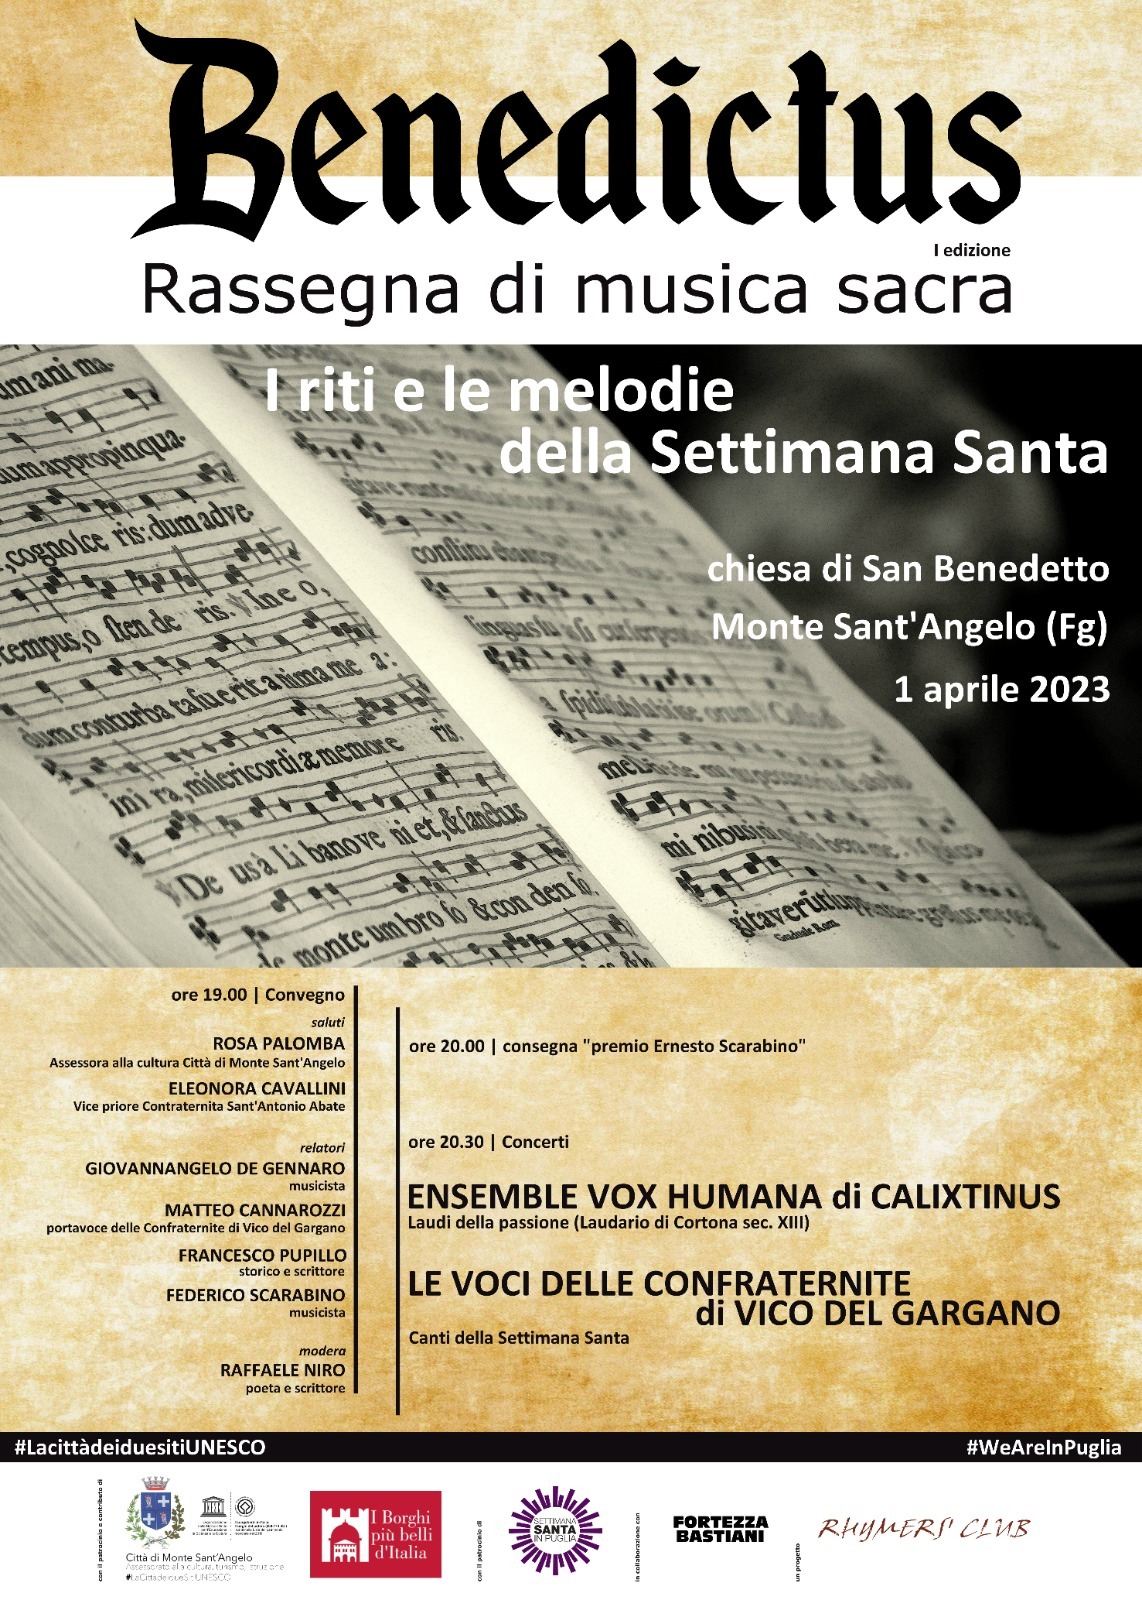 Monte Sant'Angelo, Benedictus: I riti e le melodie della Settimana Santa